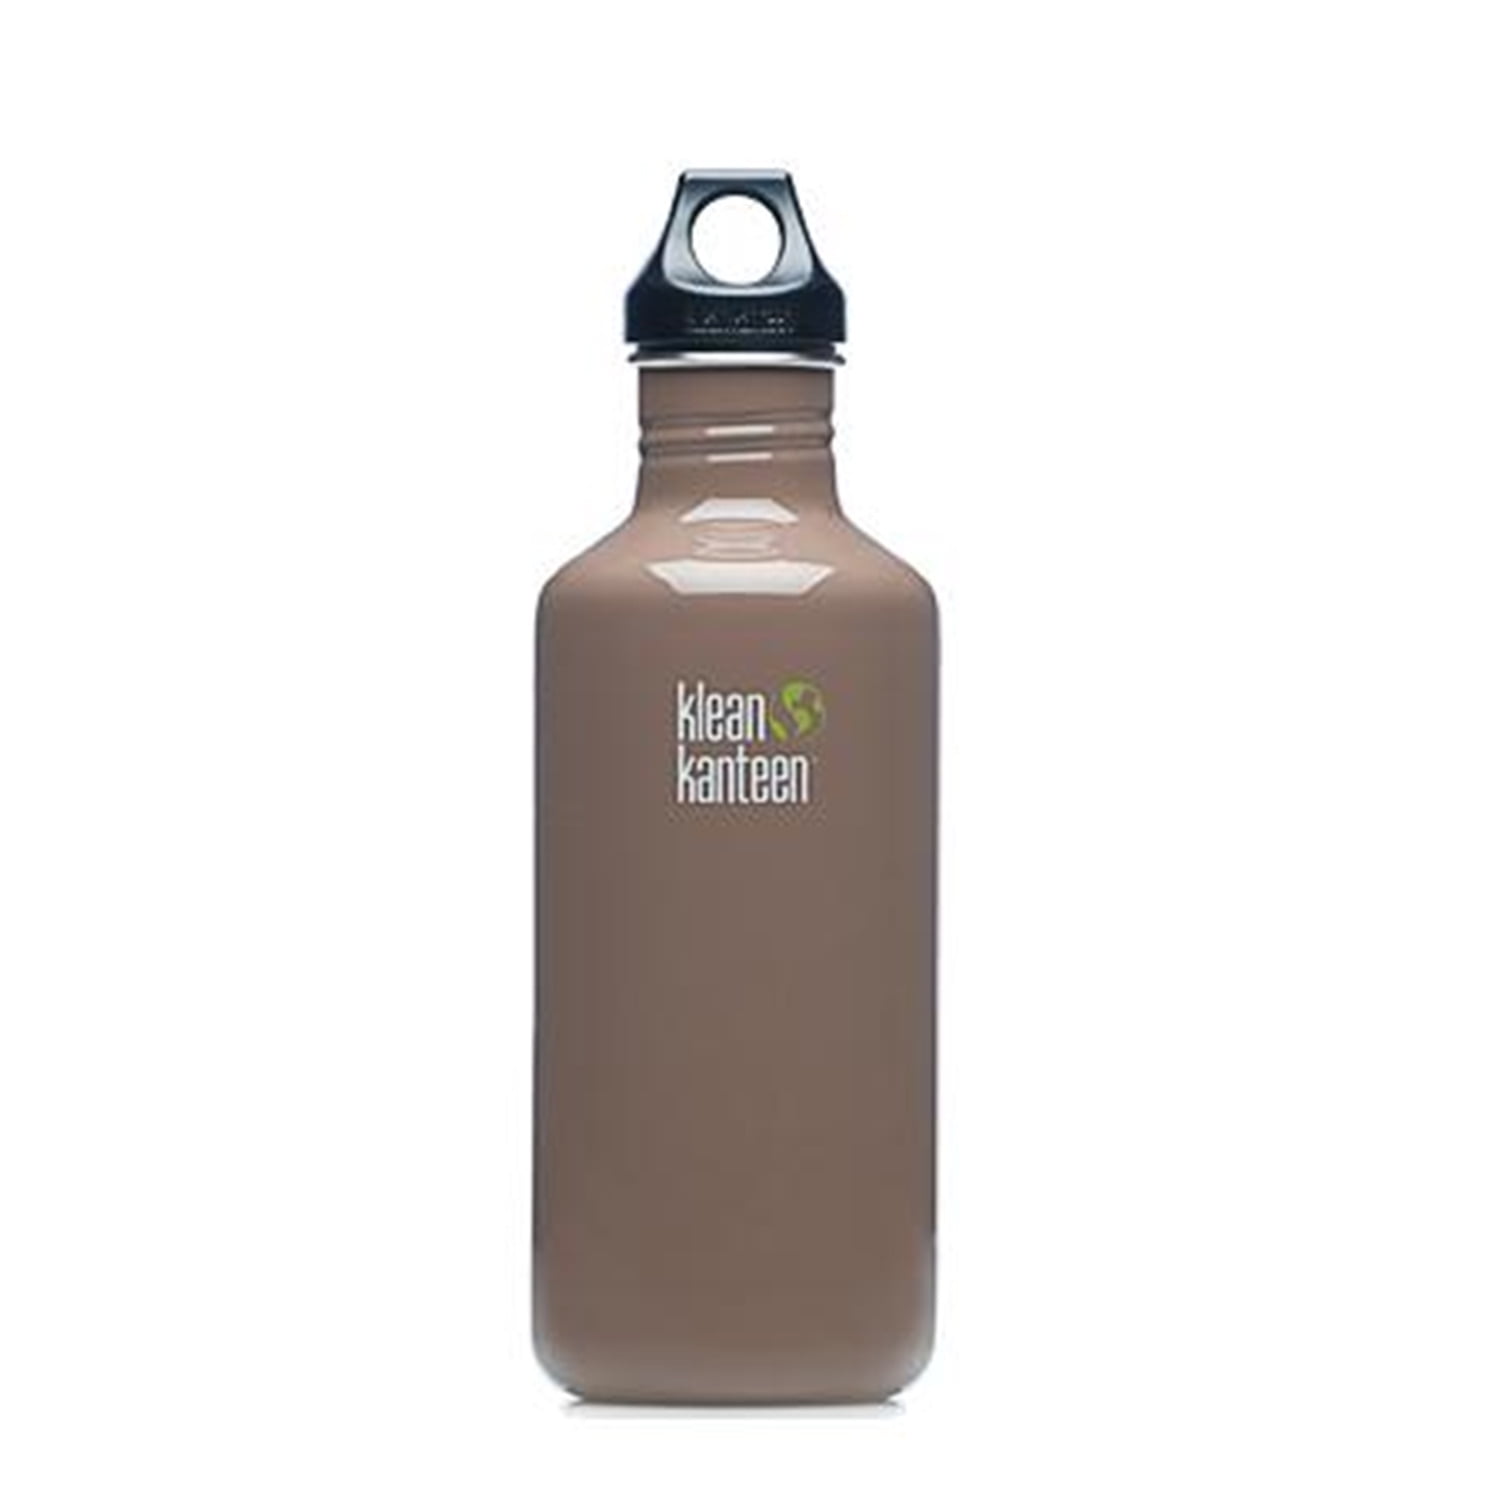 Klean Kanteen 40oz 1182ml Wide Water Bottle with Loop Cap